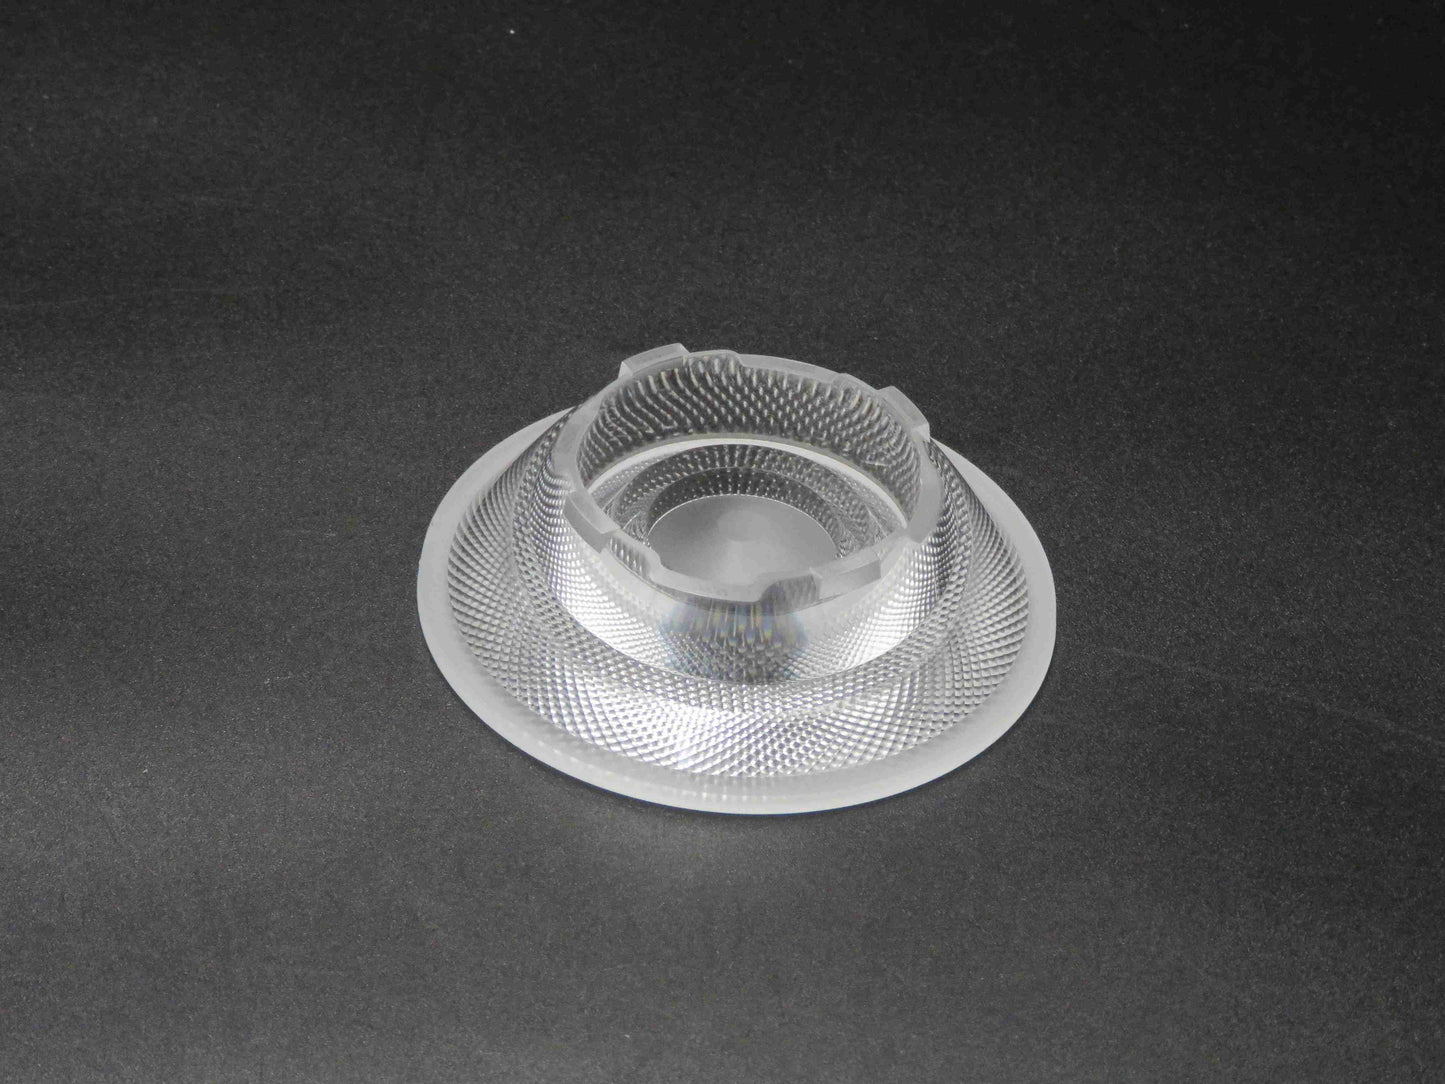 الشركة المصنعة 75MM Fresnel Lens عدسات LED الضوئية عدسات LED التجارية للبيع بالتجزئة في الأماكن المغلقة فائقة الرقة